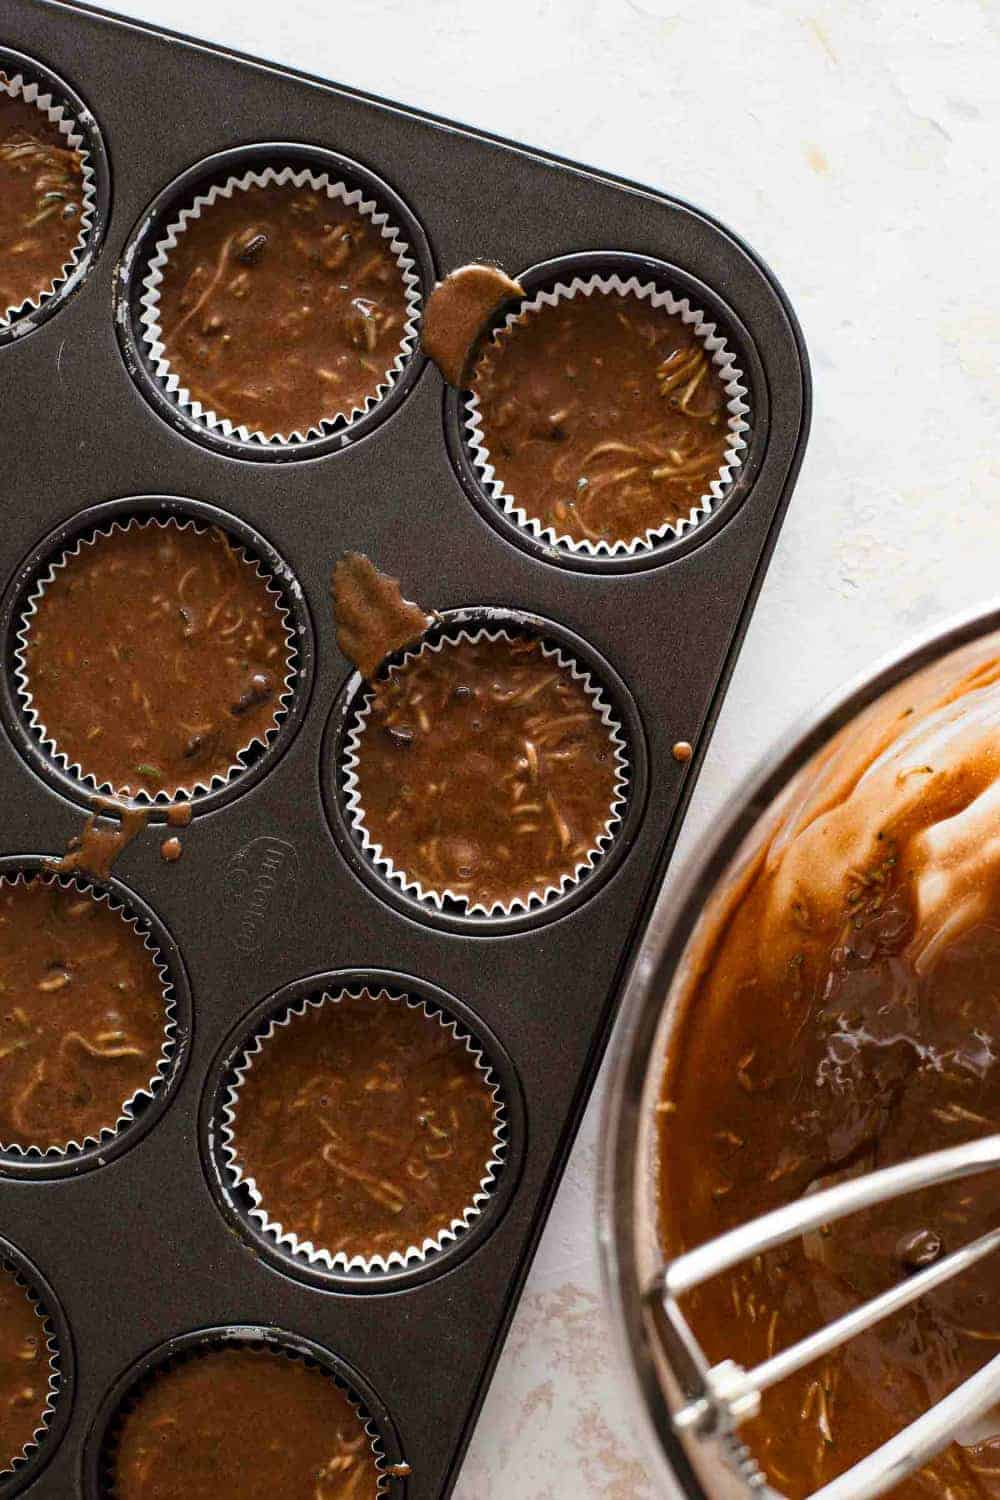 Chocolate zucchini muffin batter in a muffin pan